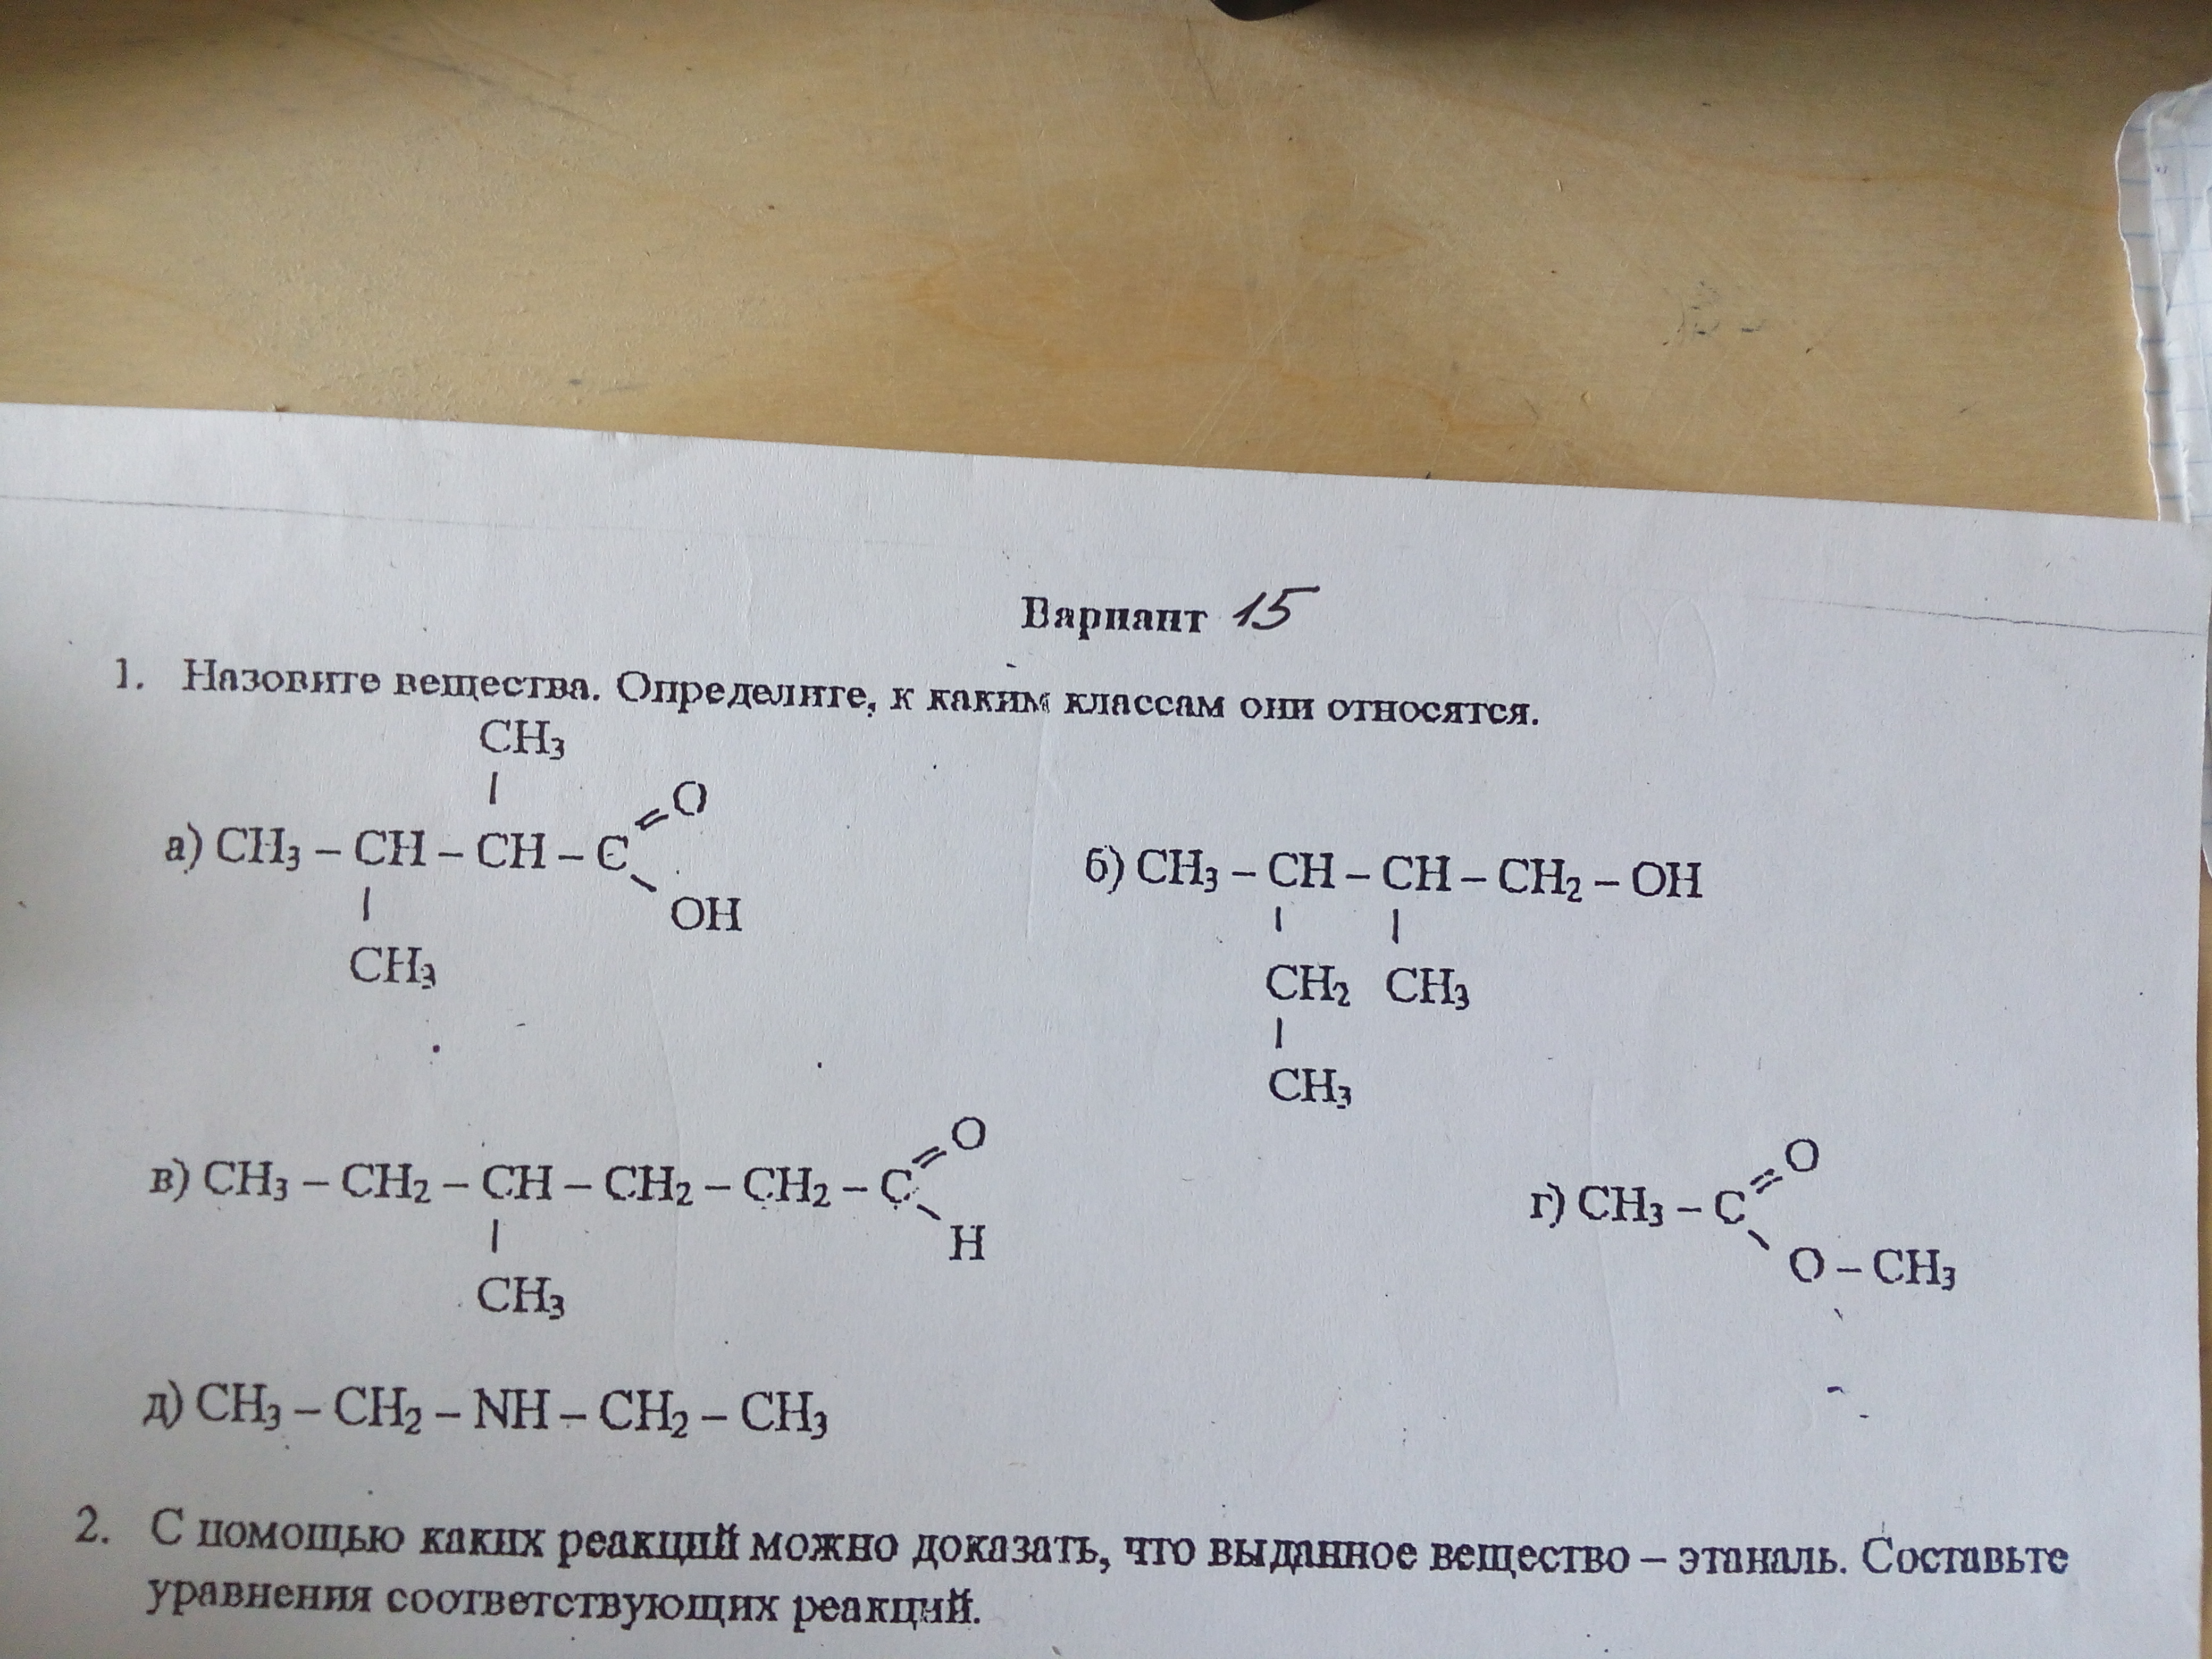 Пентанол 1. Пентанол 1 с натрием. 3,3 Диметил бутановая кислота. 2.2 Диметил бутановая кислота. Пентанол 1 реакции